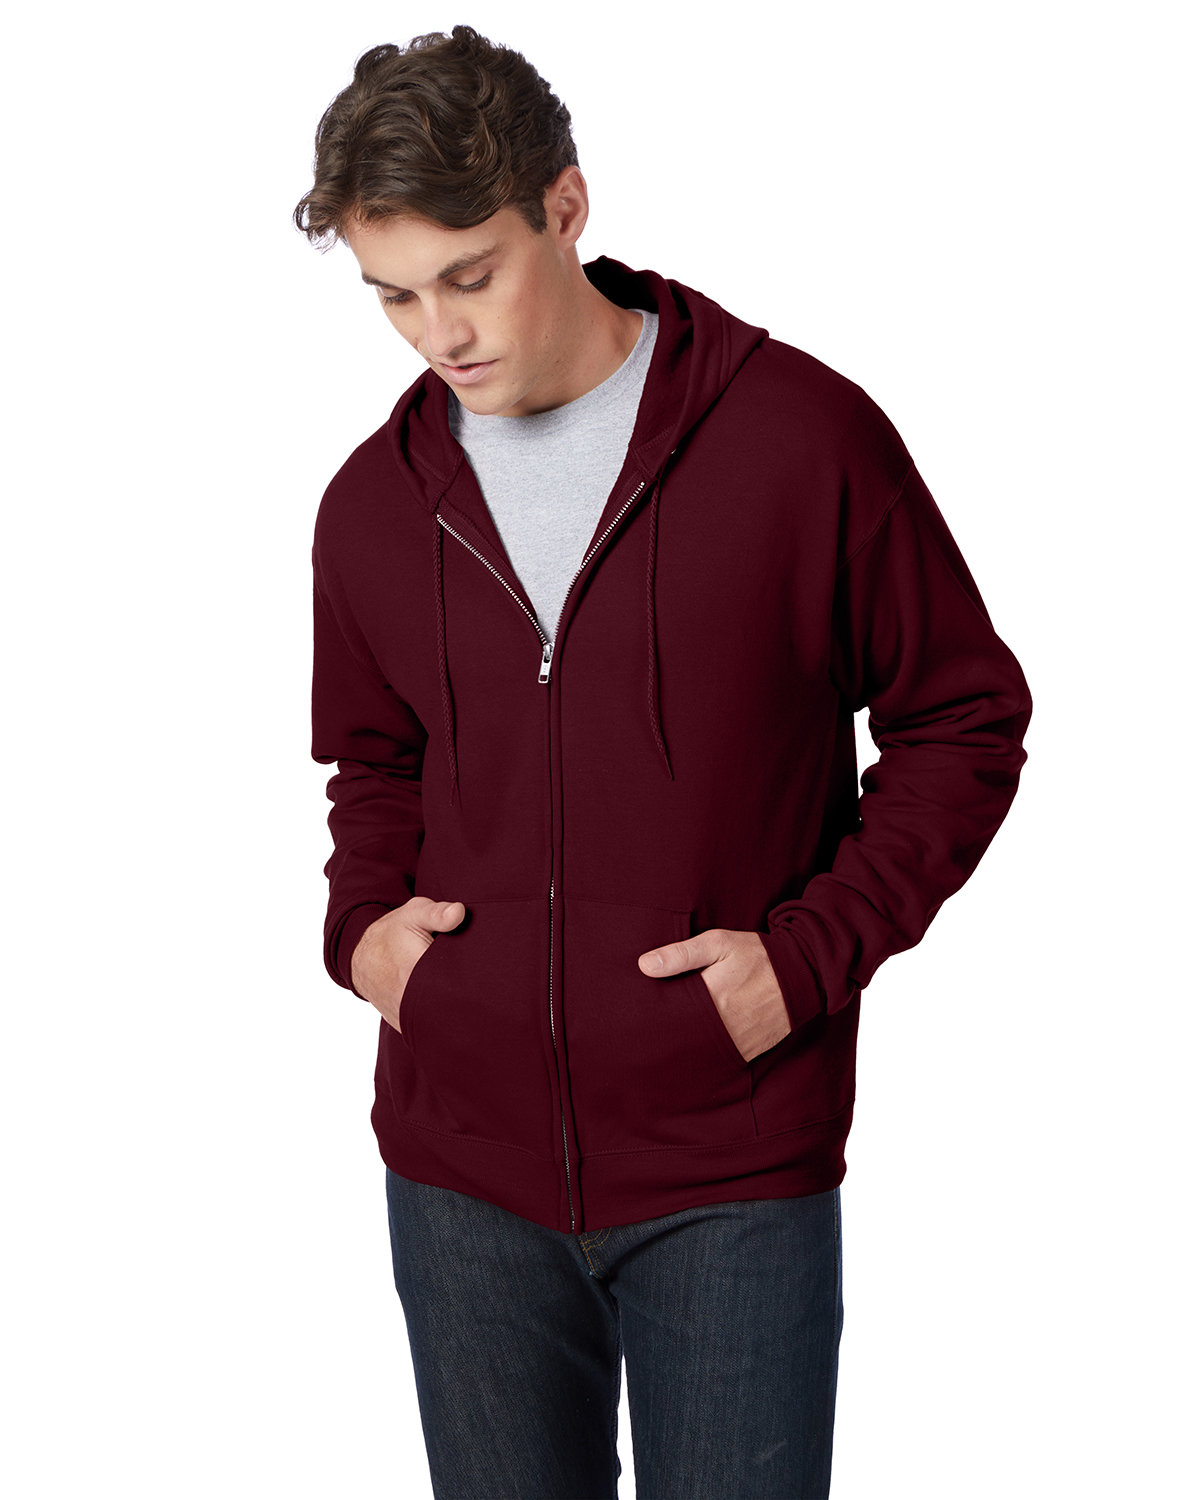 Hanes Adult 7.8 oz. EcoSmart® 50/50 Full-Zip Hooded Sweatshirt ...